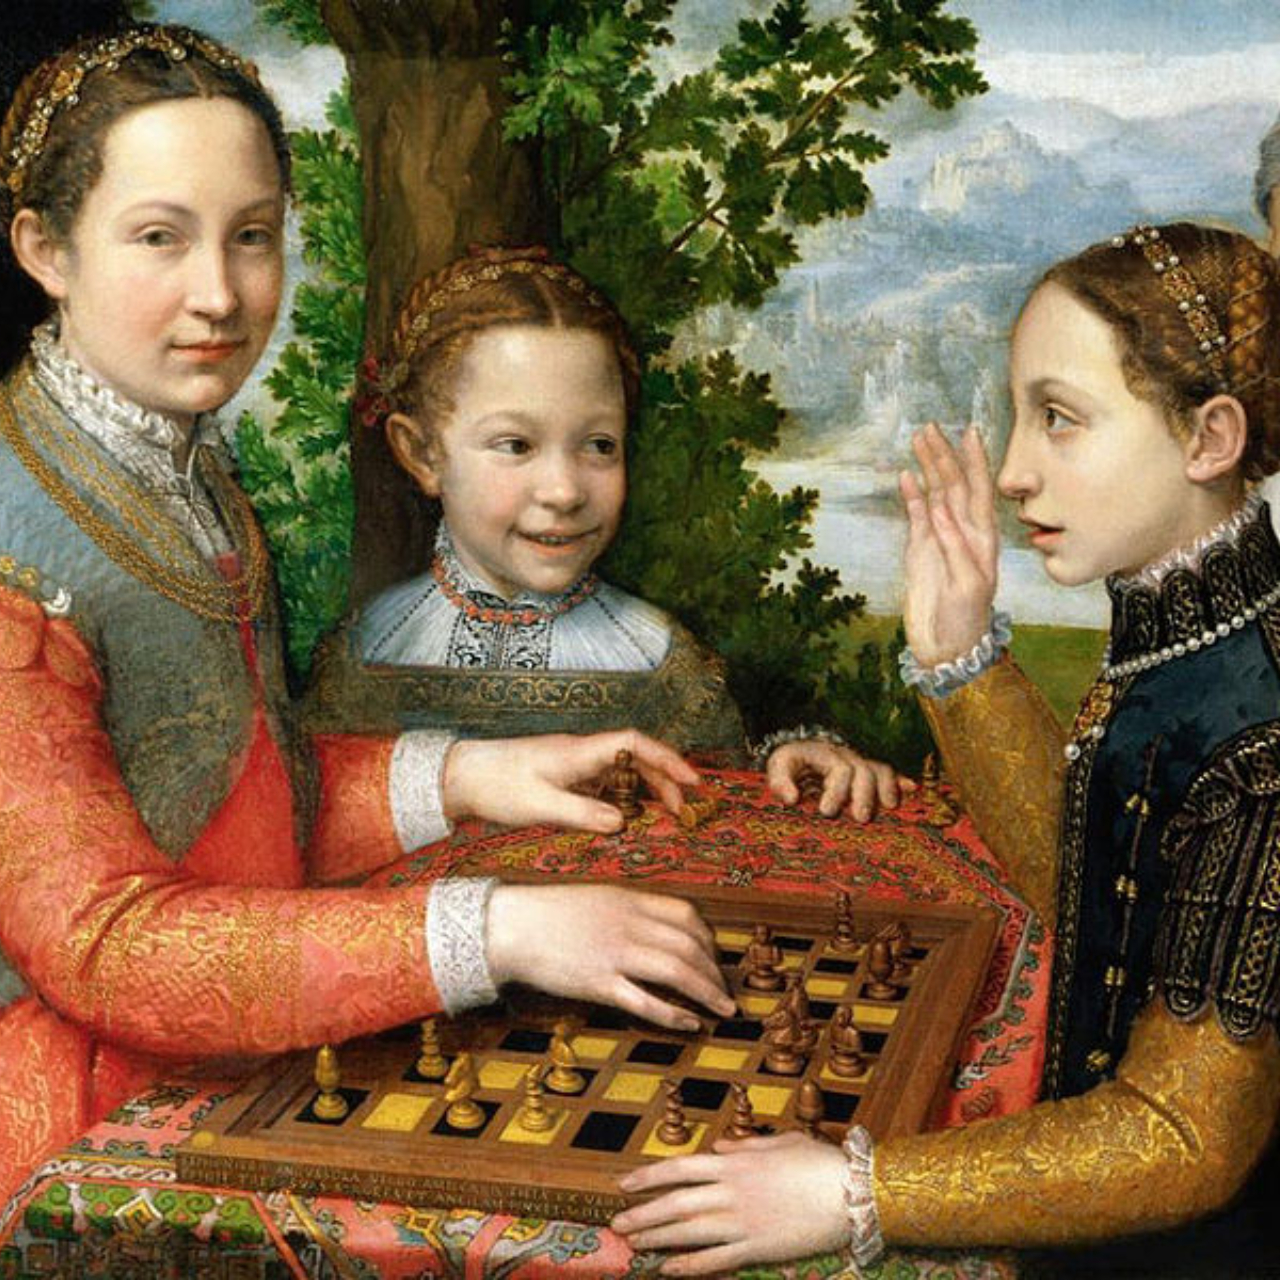 Quadro retratando as irmãs de Sofonisba jogando xadrez